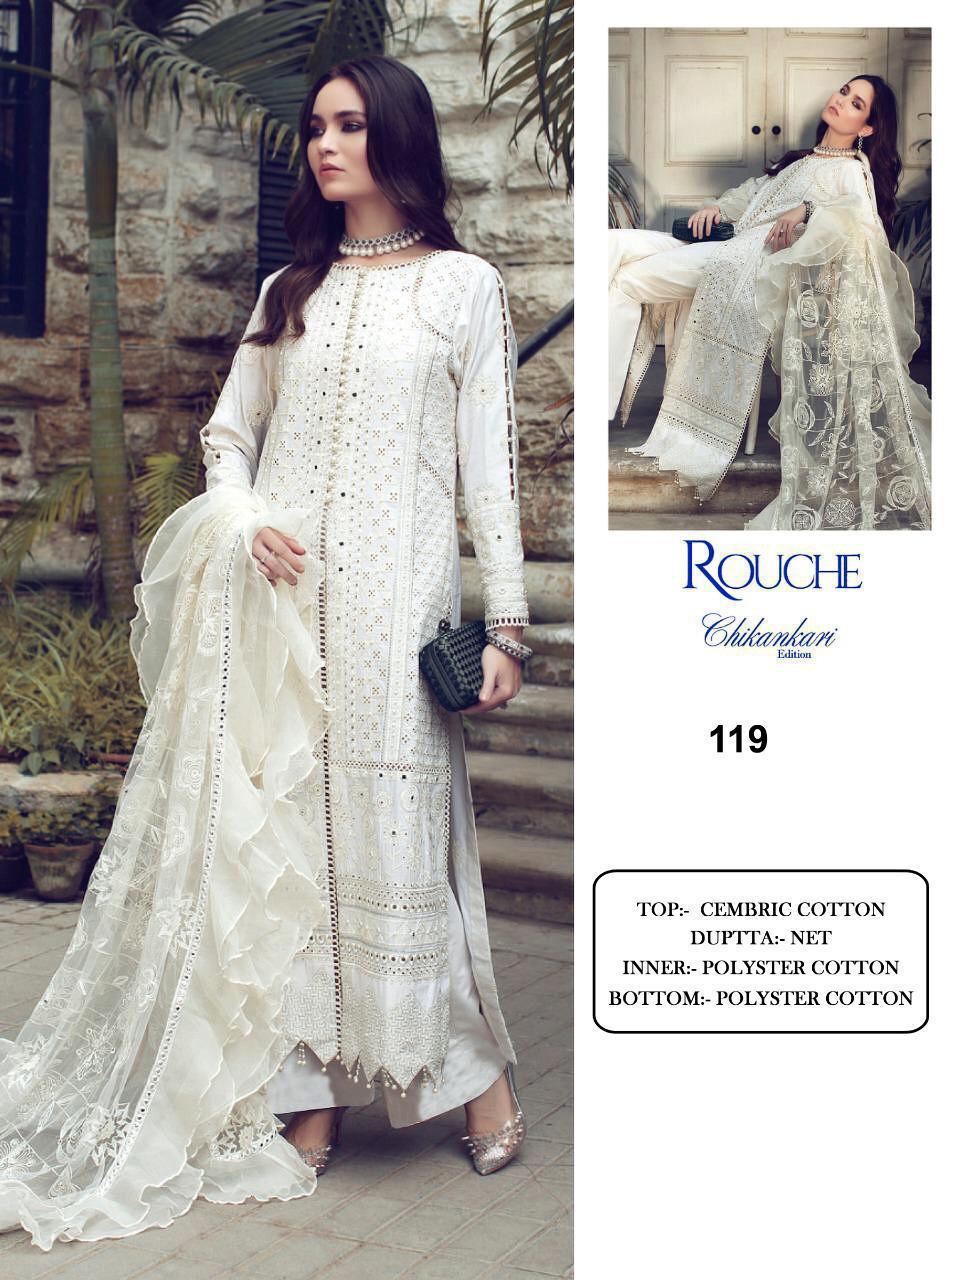 Pakistani Suits Rouche Chikankari Edition KF 119